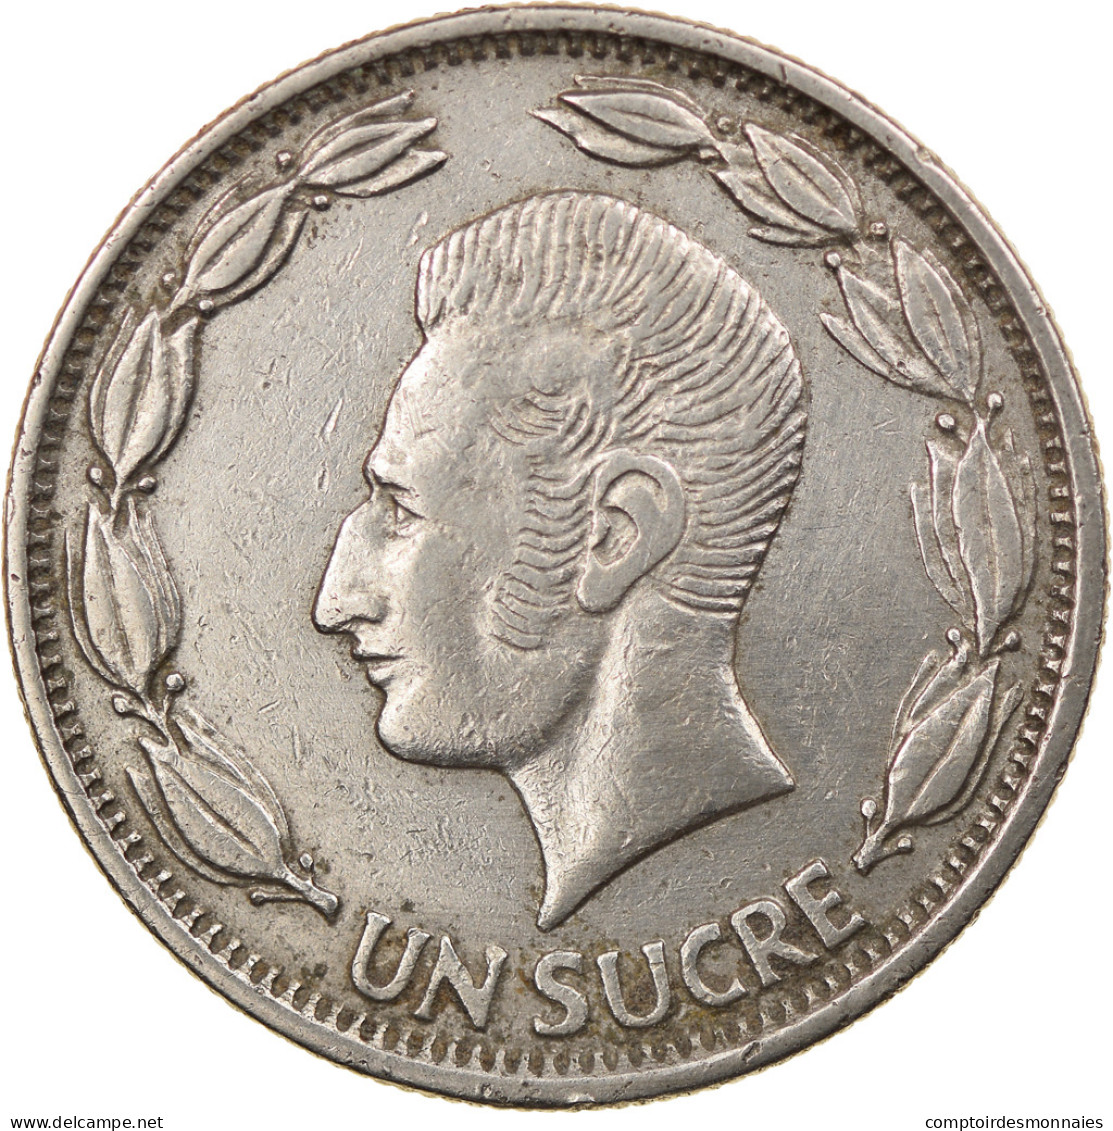 Monnaie, Équateur, Sucre, Un, 1964, TTB, Nickel Clad Steel, KM:78b - Ecuador